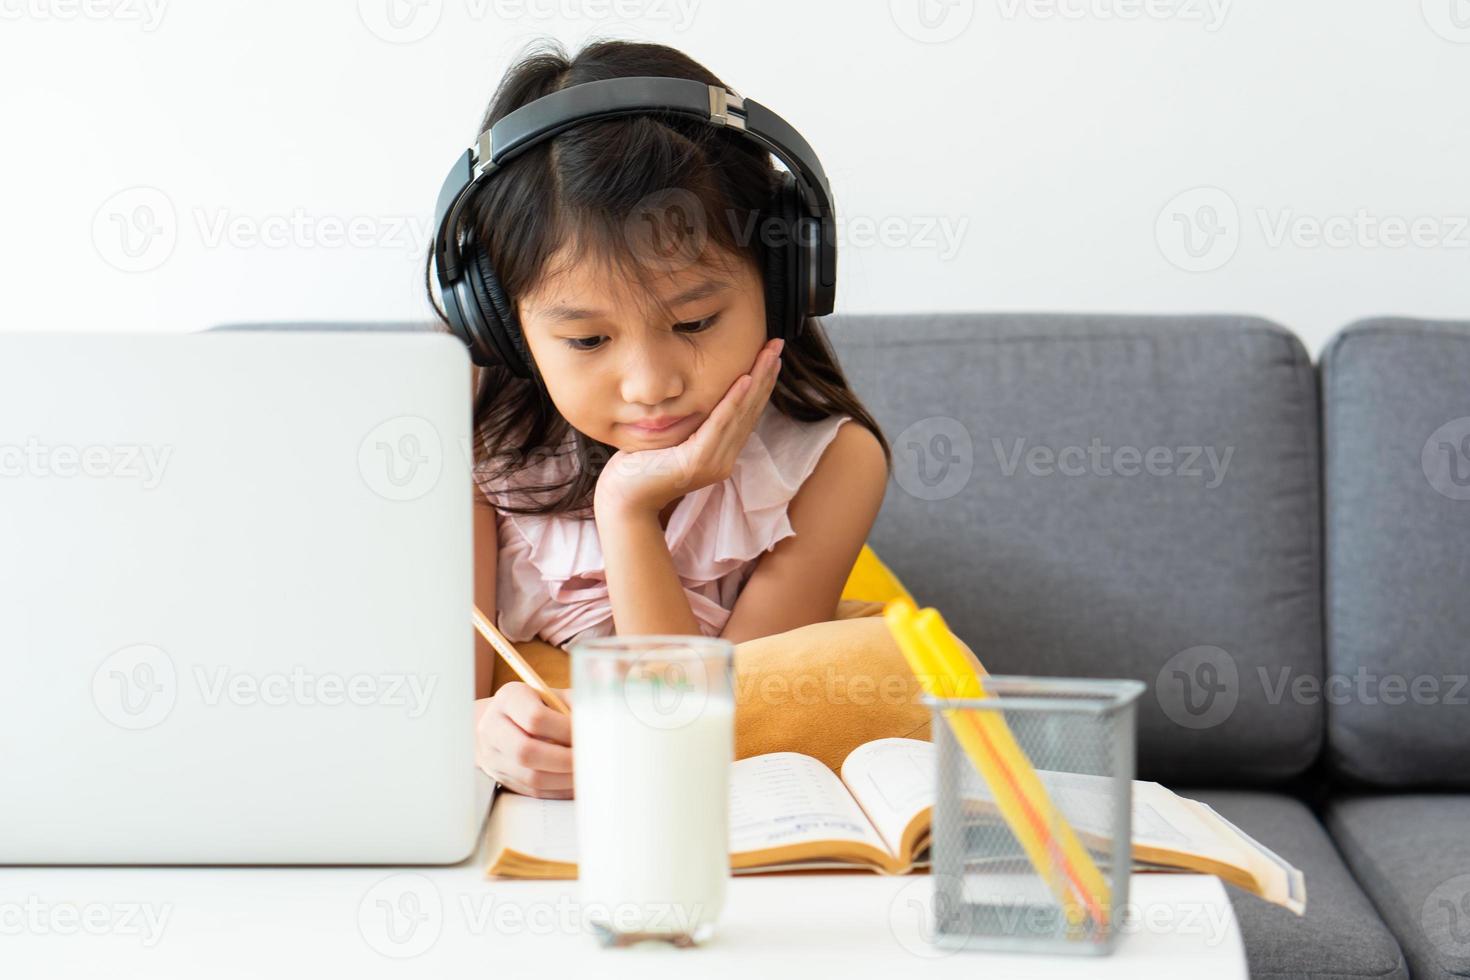 een jong Aziatisch meisje dat computer gebruikt om thuis te leren als protocol voor sociale afstand tijdens covid-19 of coronaviruspandemie. thuisonderwijs concept foto